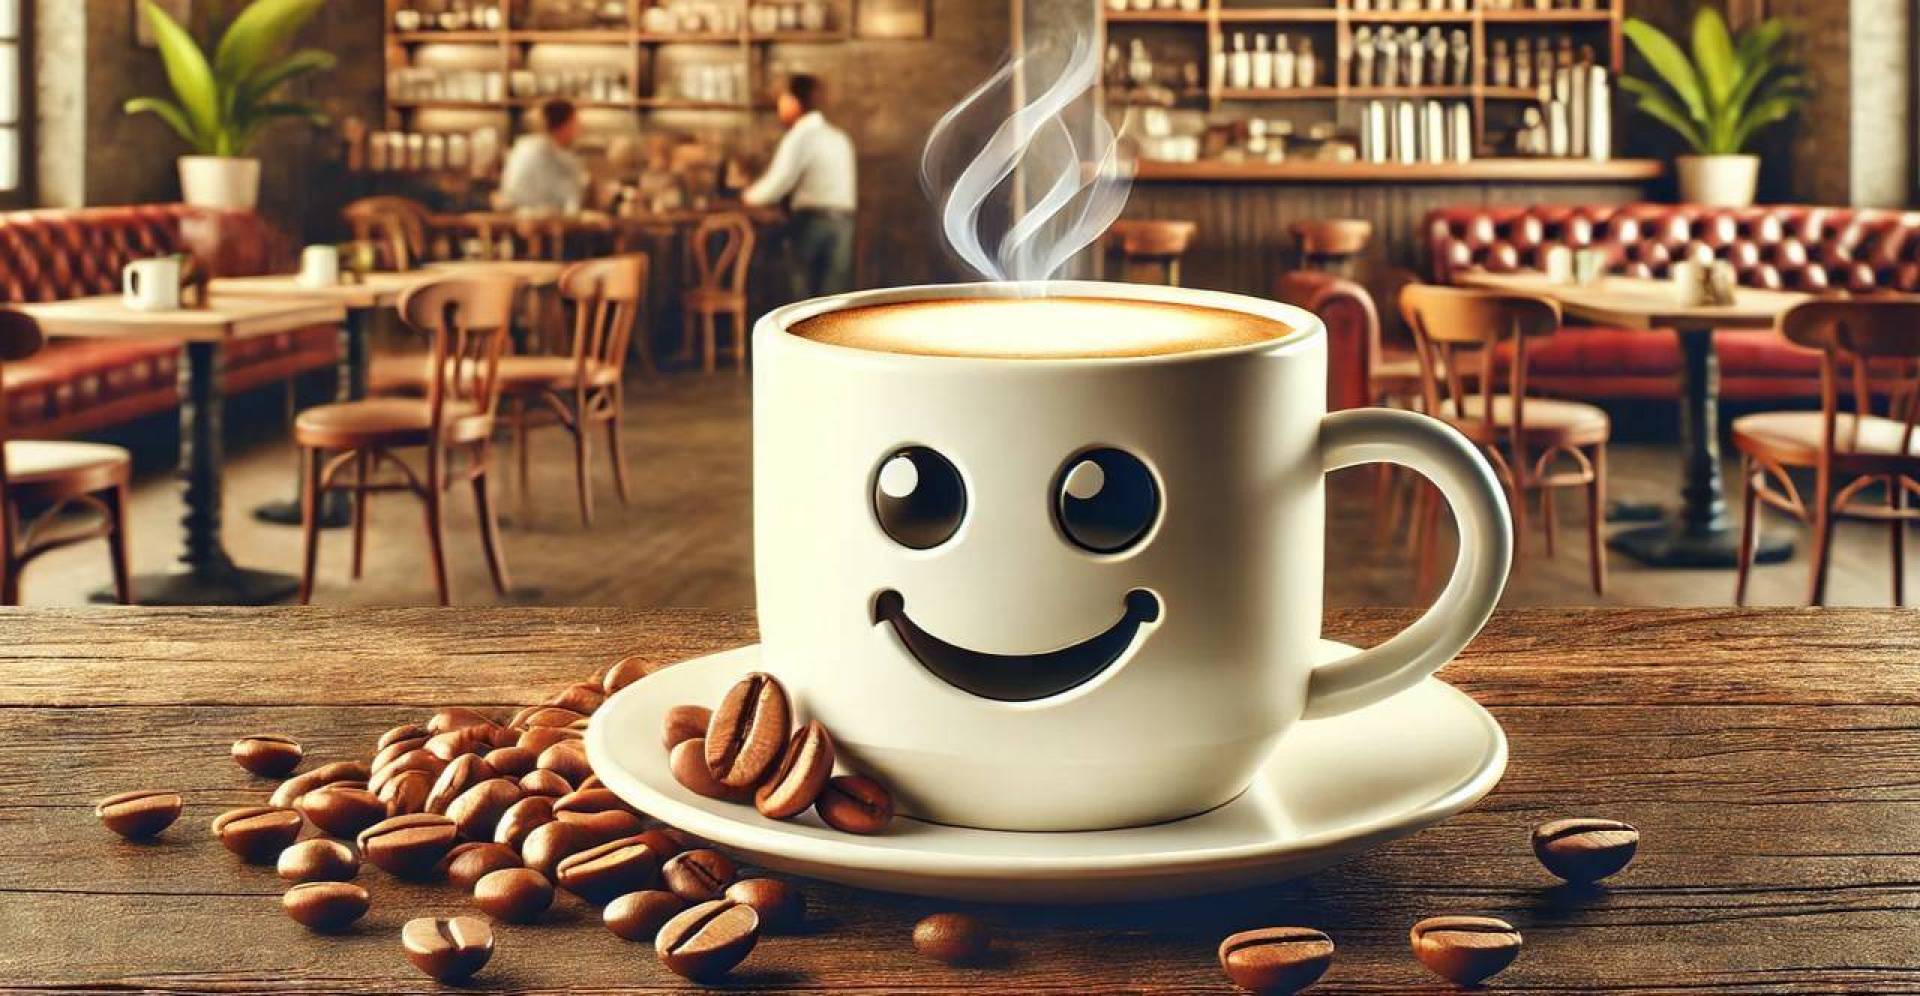 دراسة تكشف سر السعادة في فنجان القهوة وتأثيرها على الدماغ